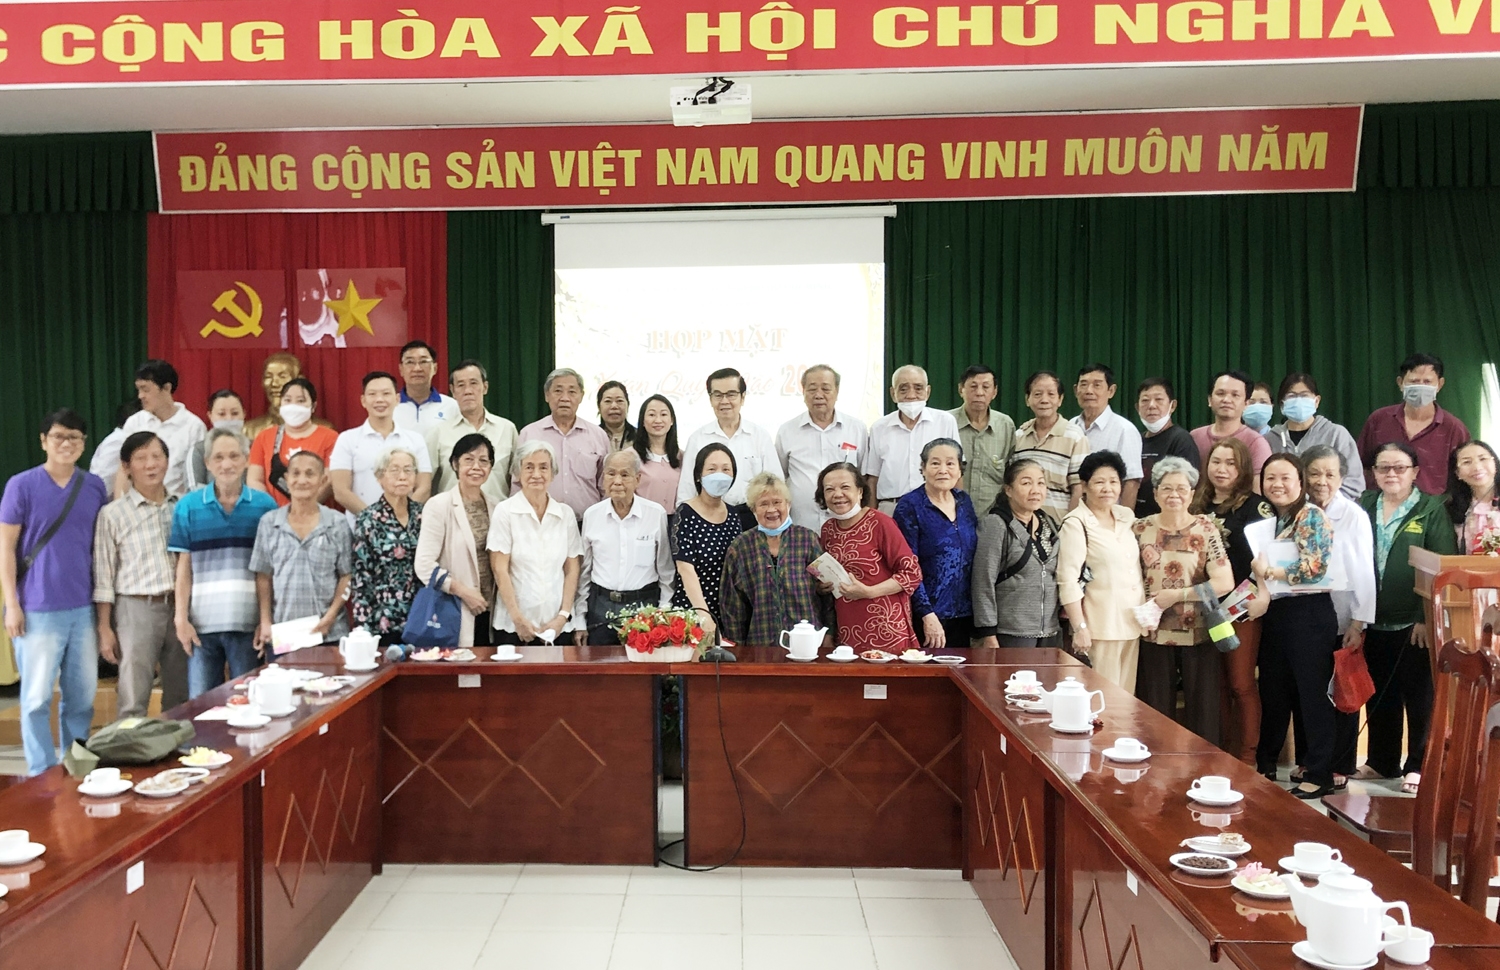 Ban Dân tộc Thành phố Hồ Chí Minh gửi tặng các phần quà chúc Tết mừng Xuân đến các đại biểu là Người có uy tín trong đồng bào DTTS của Thành phố